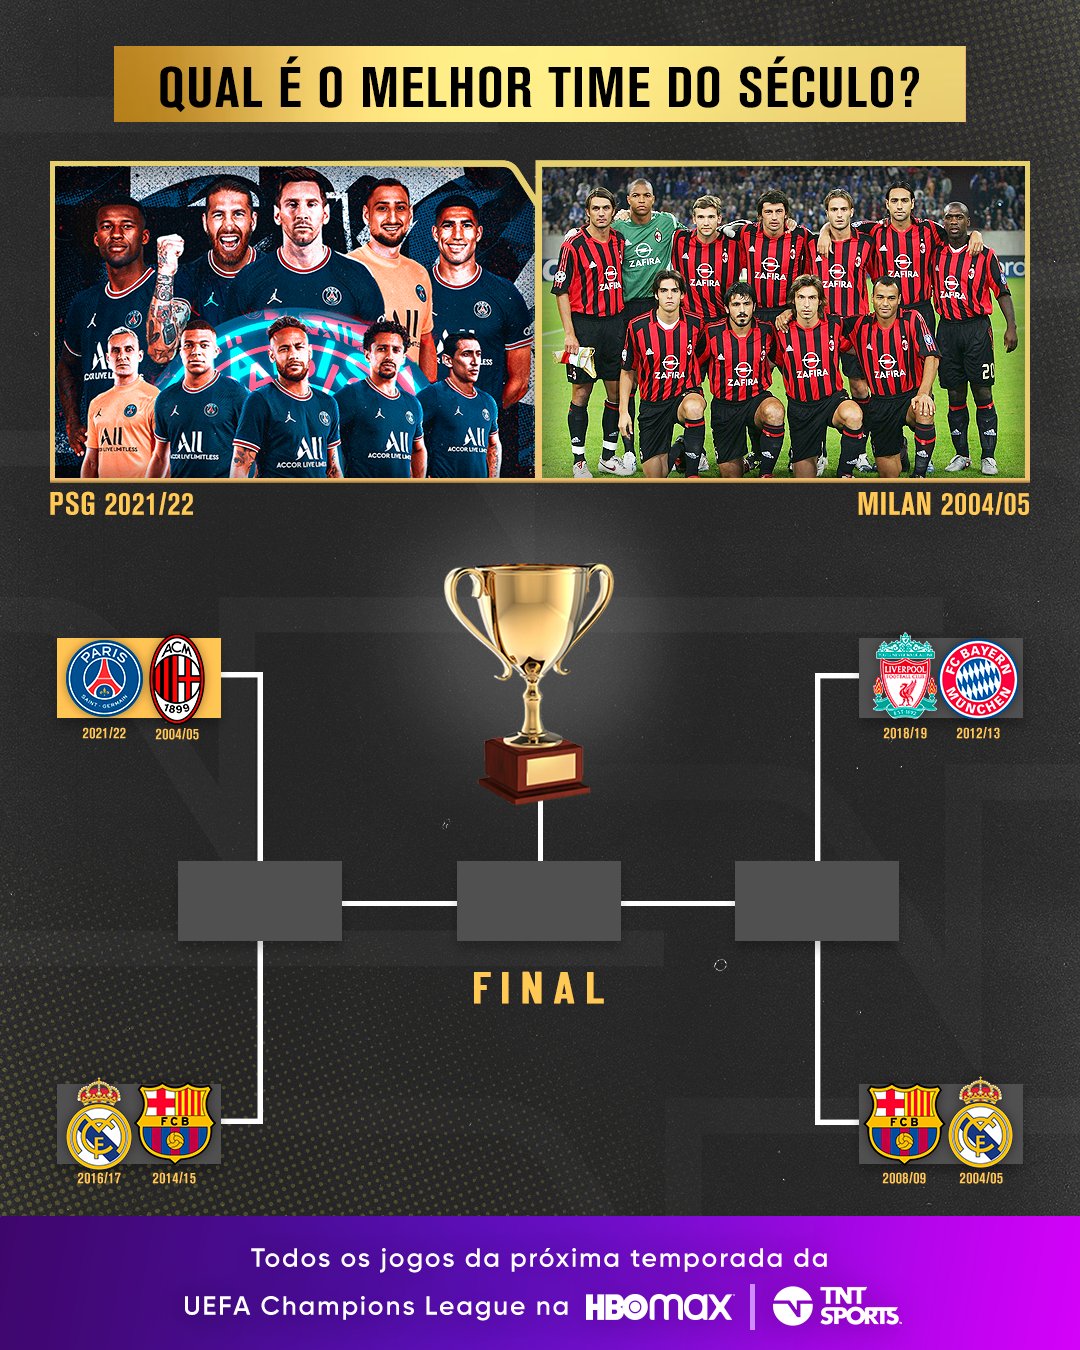 TNT Sports Brasil - SEMANA DE UEFA CHAMPIONS LEAGUE! E é a MAIOR